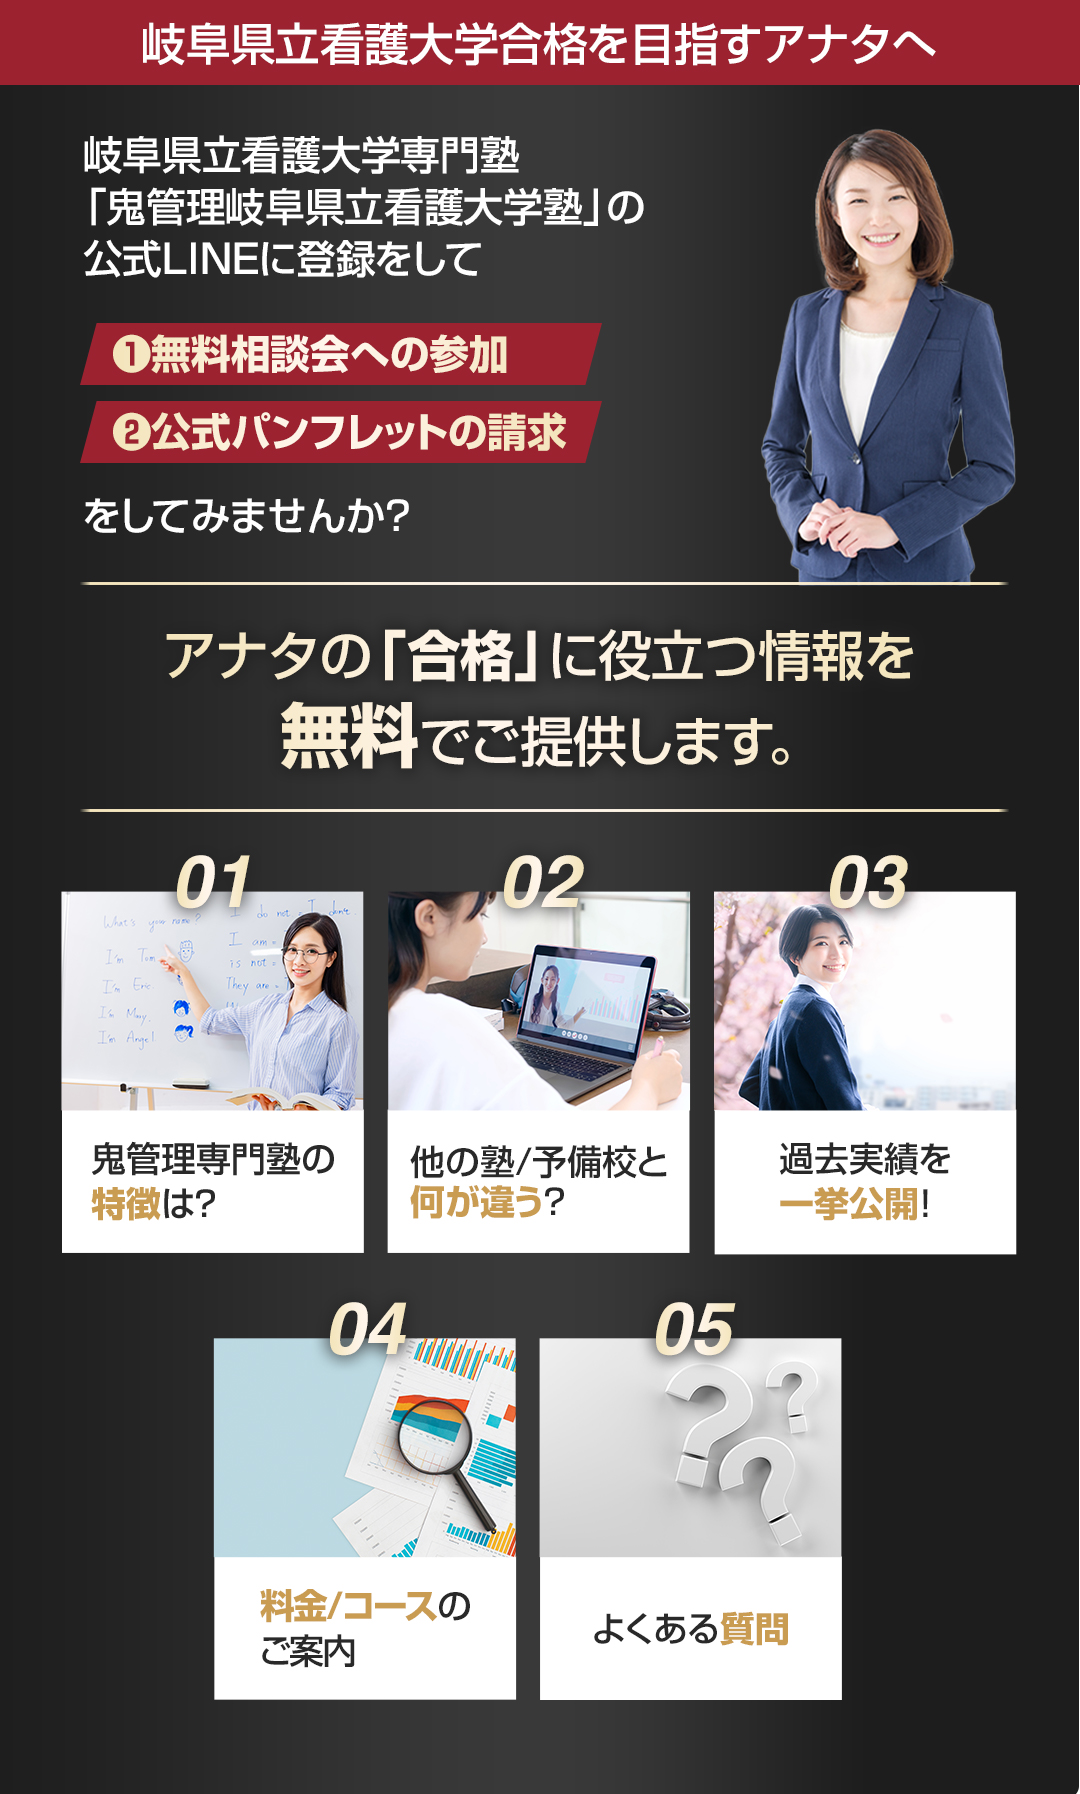 岐阜県立看護大学を目指すアナタへ合格に役立つ情報を無料でご提供します